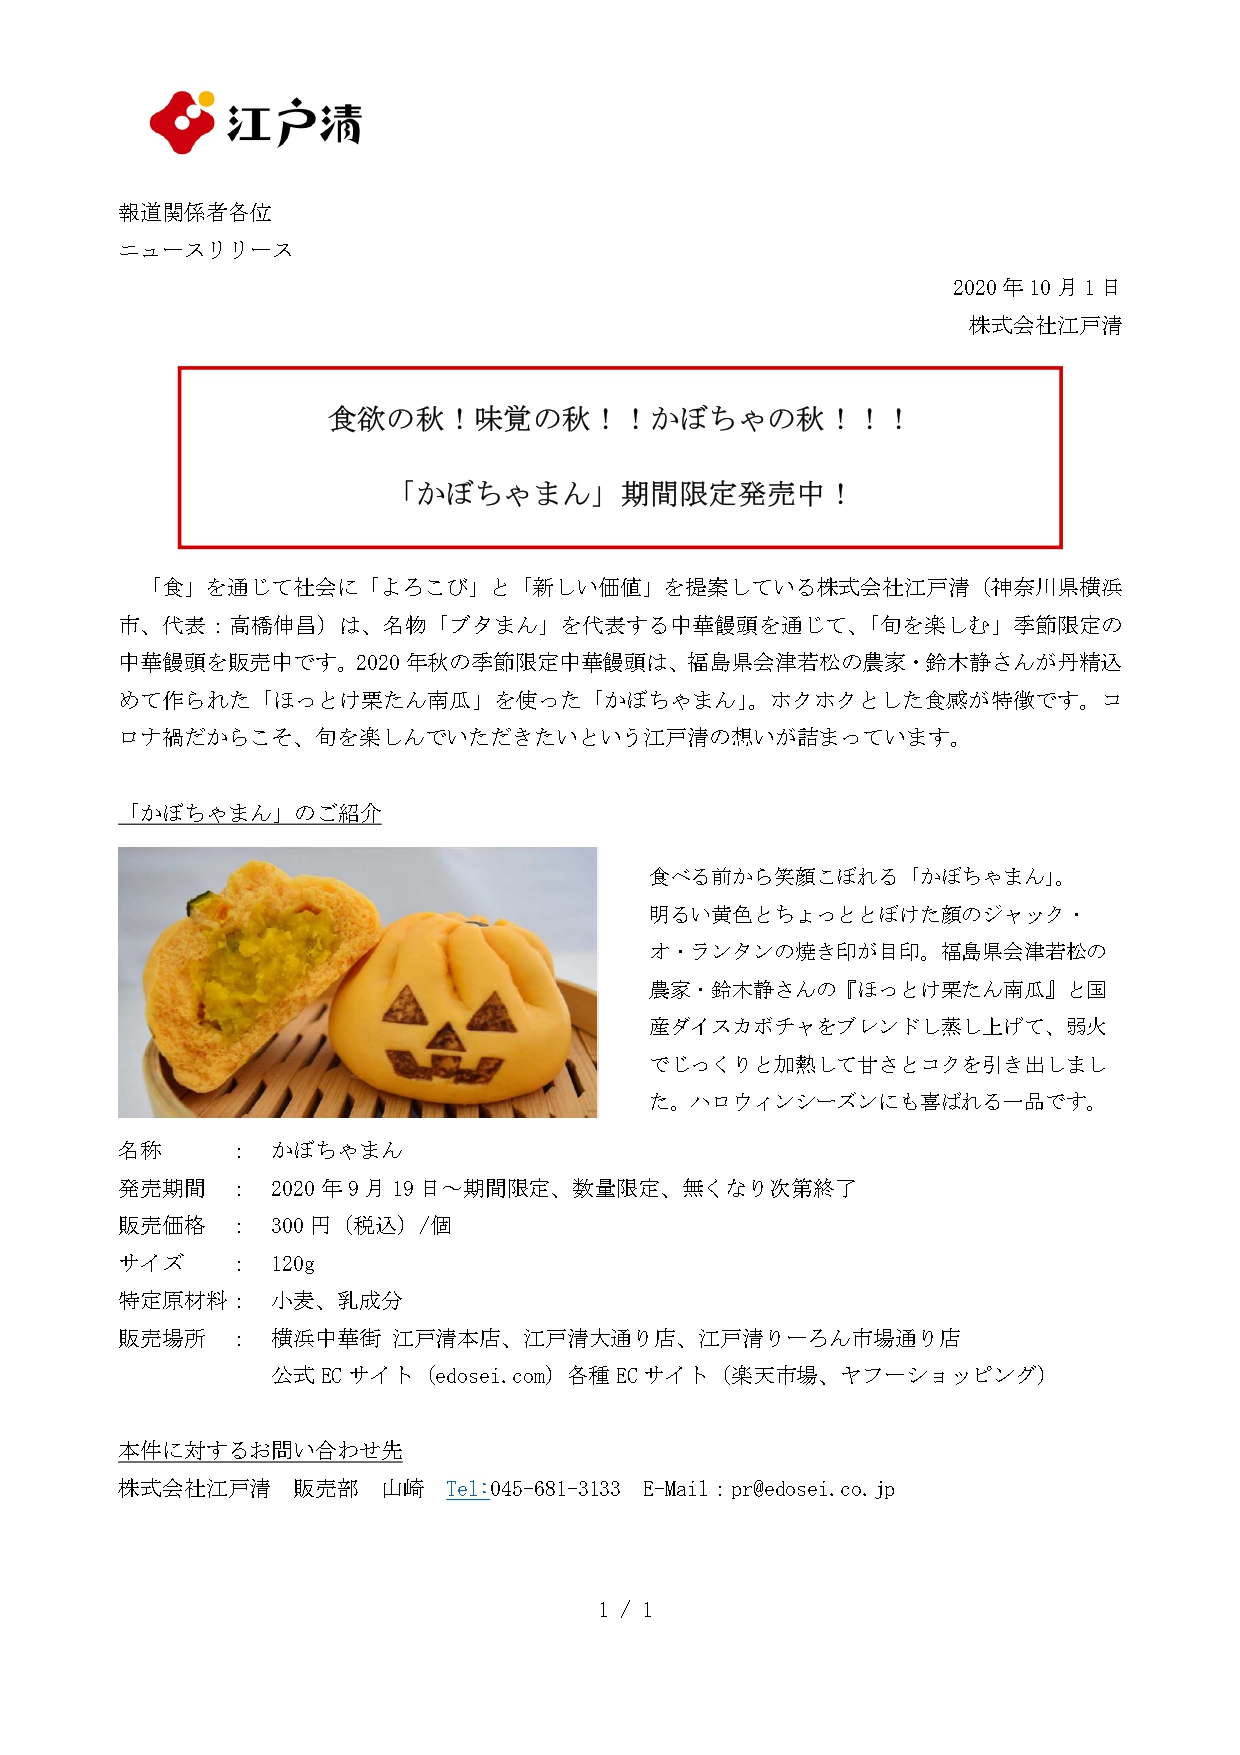 かぼちゃまん 発売中 公式 株式会社江戸清コーポレイトサイト